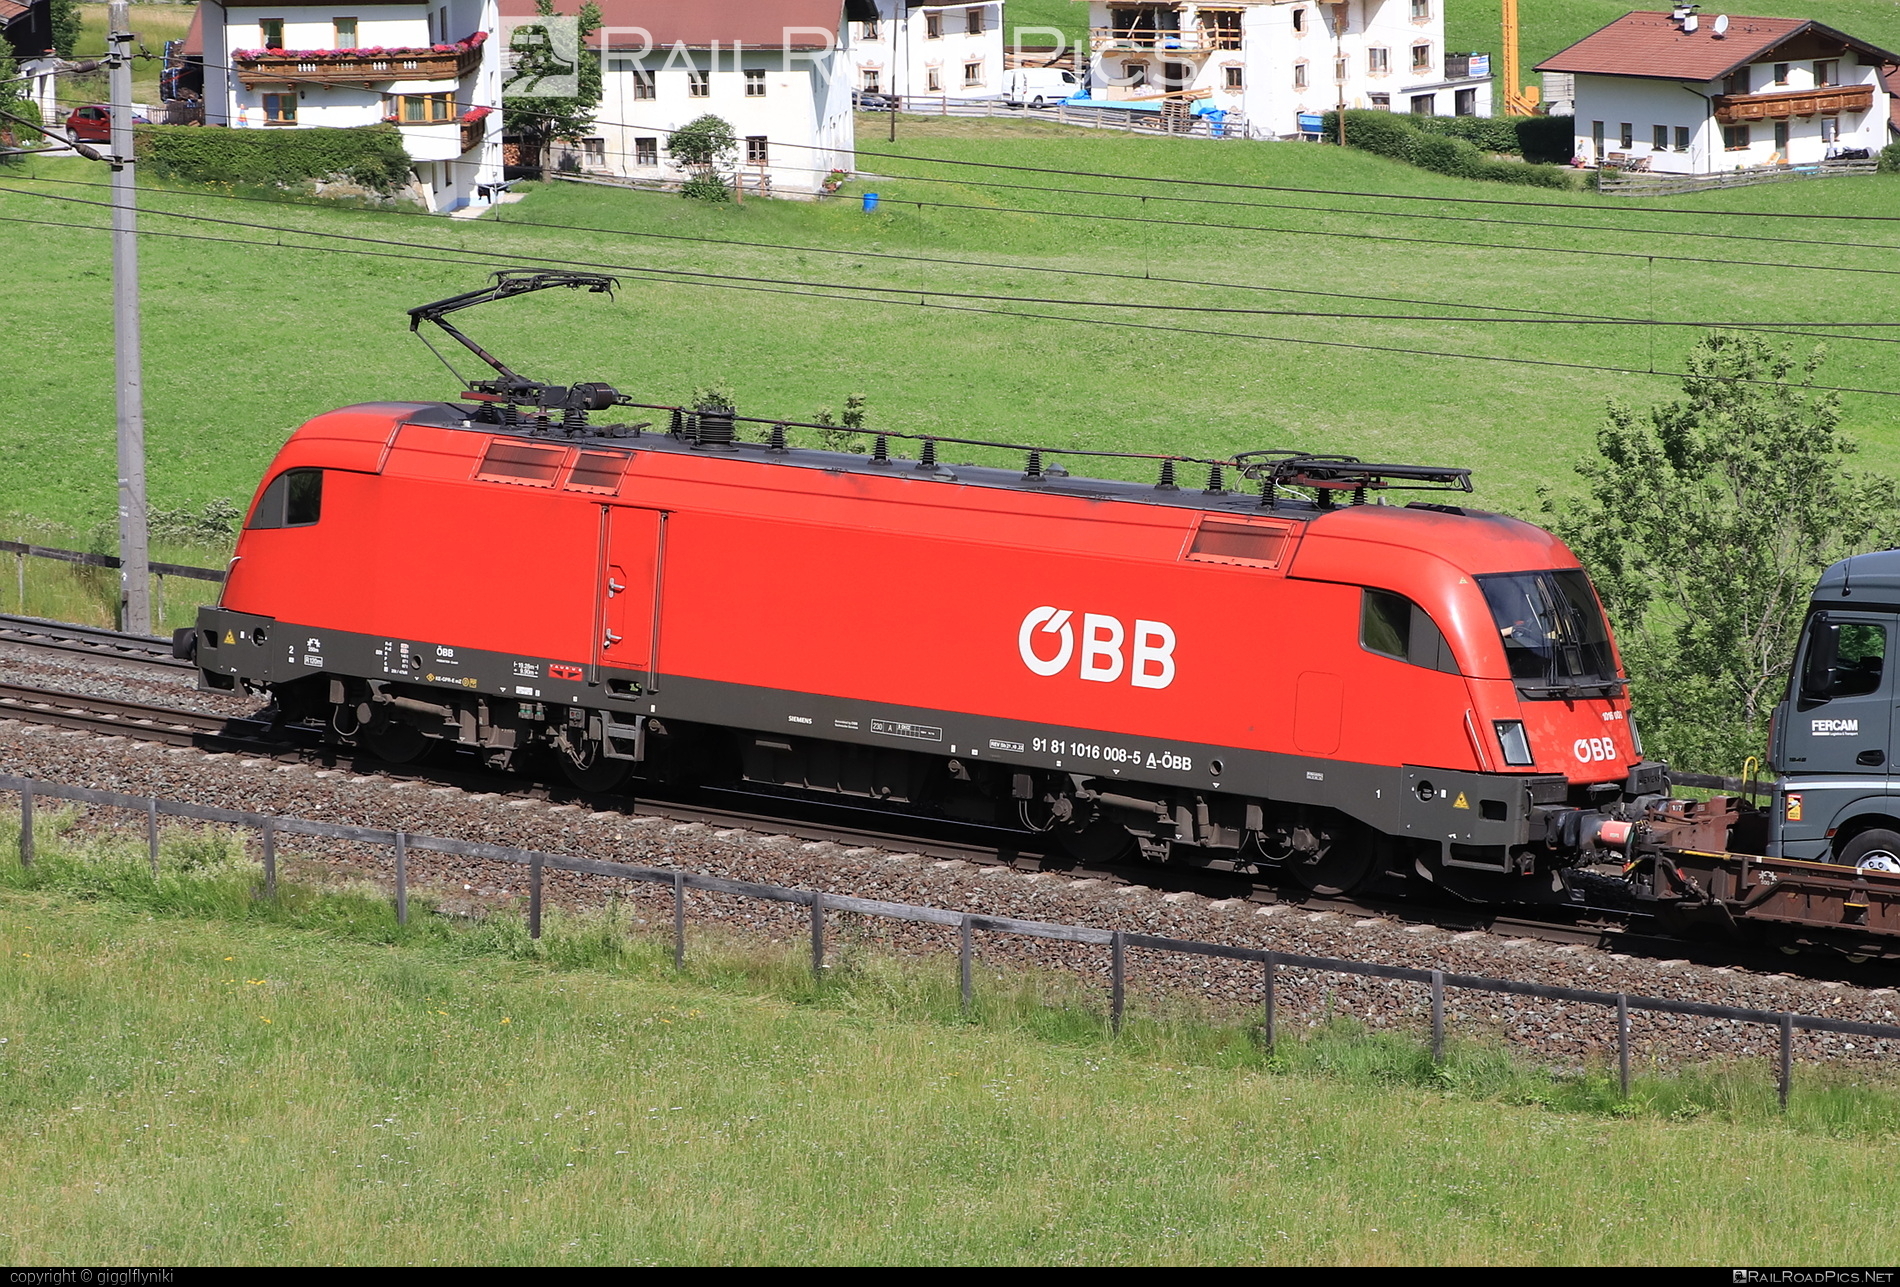 Siemens ES 64 U2 - 1016 008 operated by Rail Cargo Austria AG #es64 #es64u2 #eurosprinter #obb #osterreichischebundesbahnen #rcw #siemens #siemensEs64 #siemensEs64u2 #siemenstaurus #taurus #tauruslocomotive